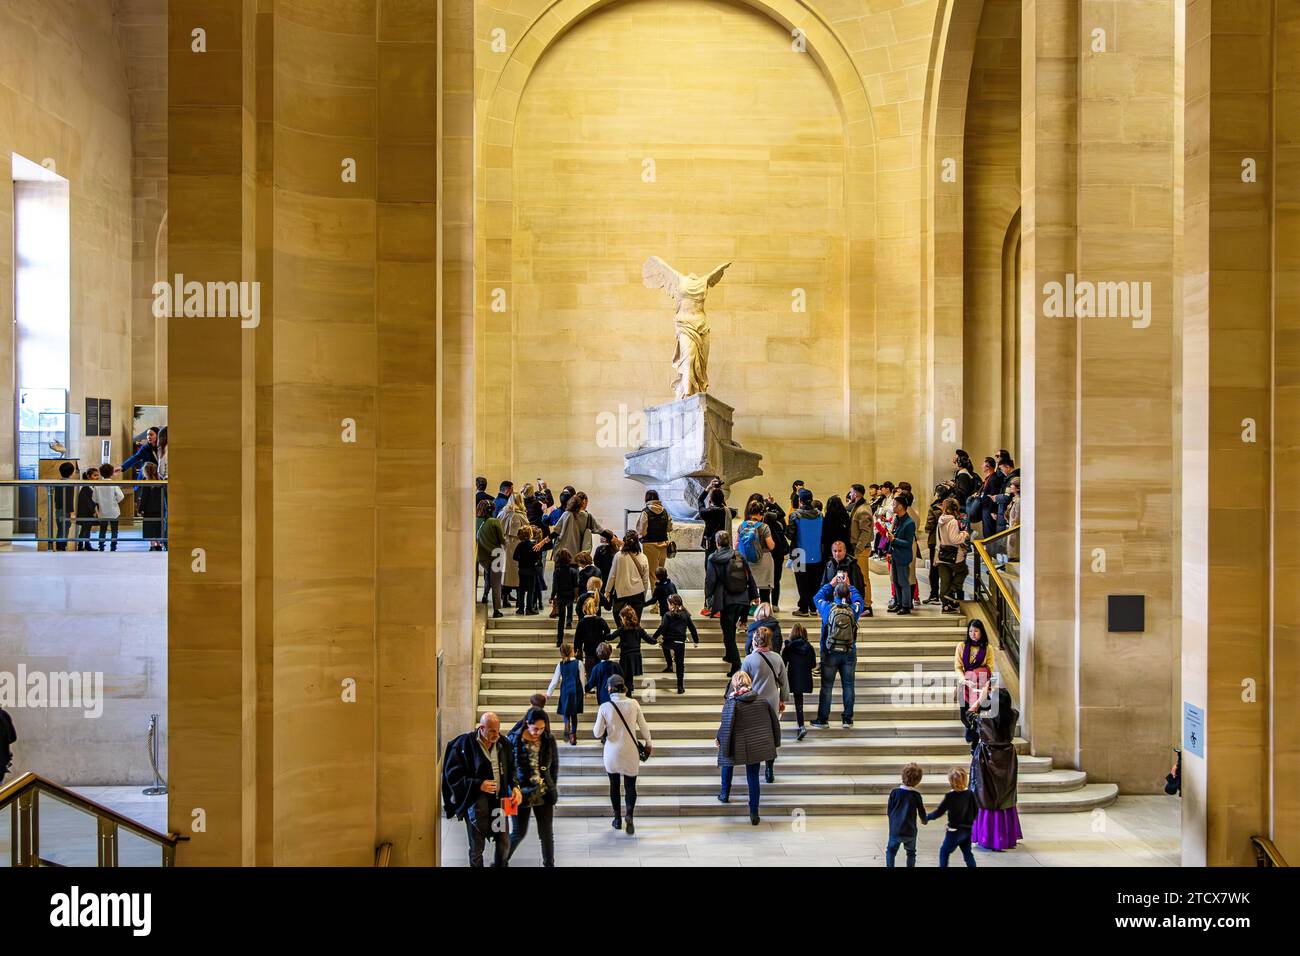 Der geflügelte Sieg von Samothrake, eine der berühmtesten Statuen im Louvre, ziert die Spitze der monumentalen Daru-Treppe in Paris, Frankreich Stockfoto